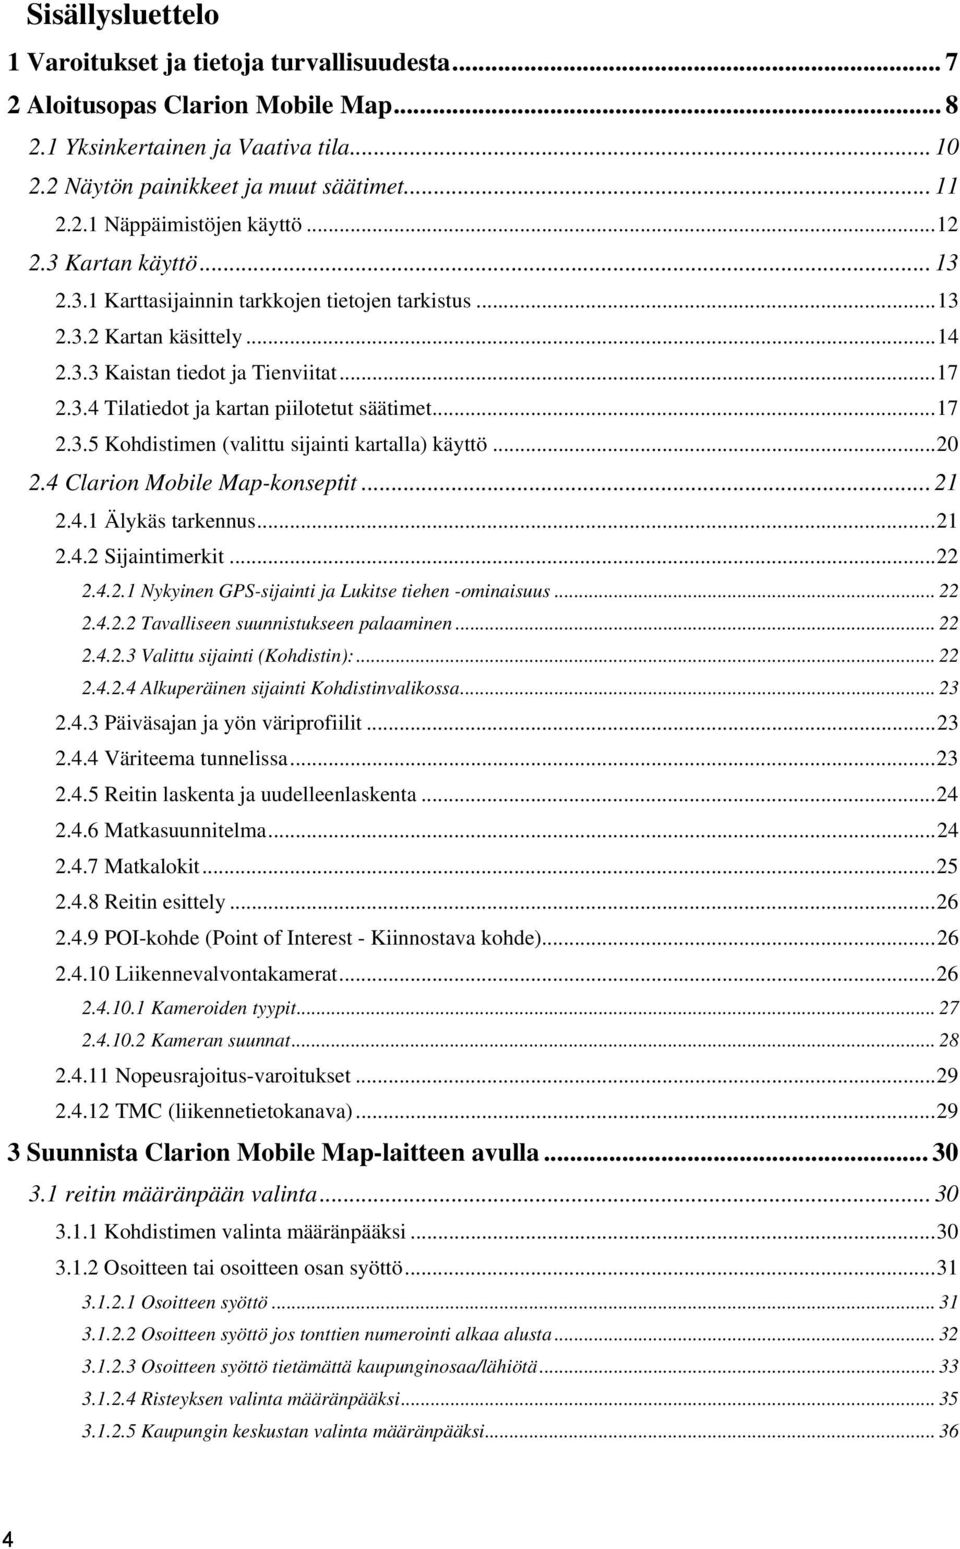 .. 17 2.3.5 Kohdistimen (valittu sijainti kartalla) käyttö... 20 2.4 Clarion Mobile Map-konseptit... 21 2.4.1 Älykäs tarkennus... 21 2.4.2 Sijaintimerkit... 22 2.4.2.1 Nykyinen GPS-sijainti ja Lukitse tiehen -ominaisuus.